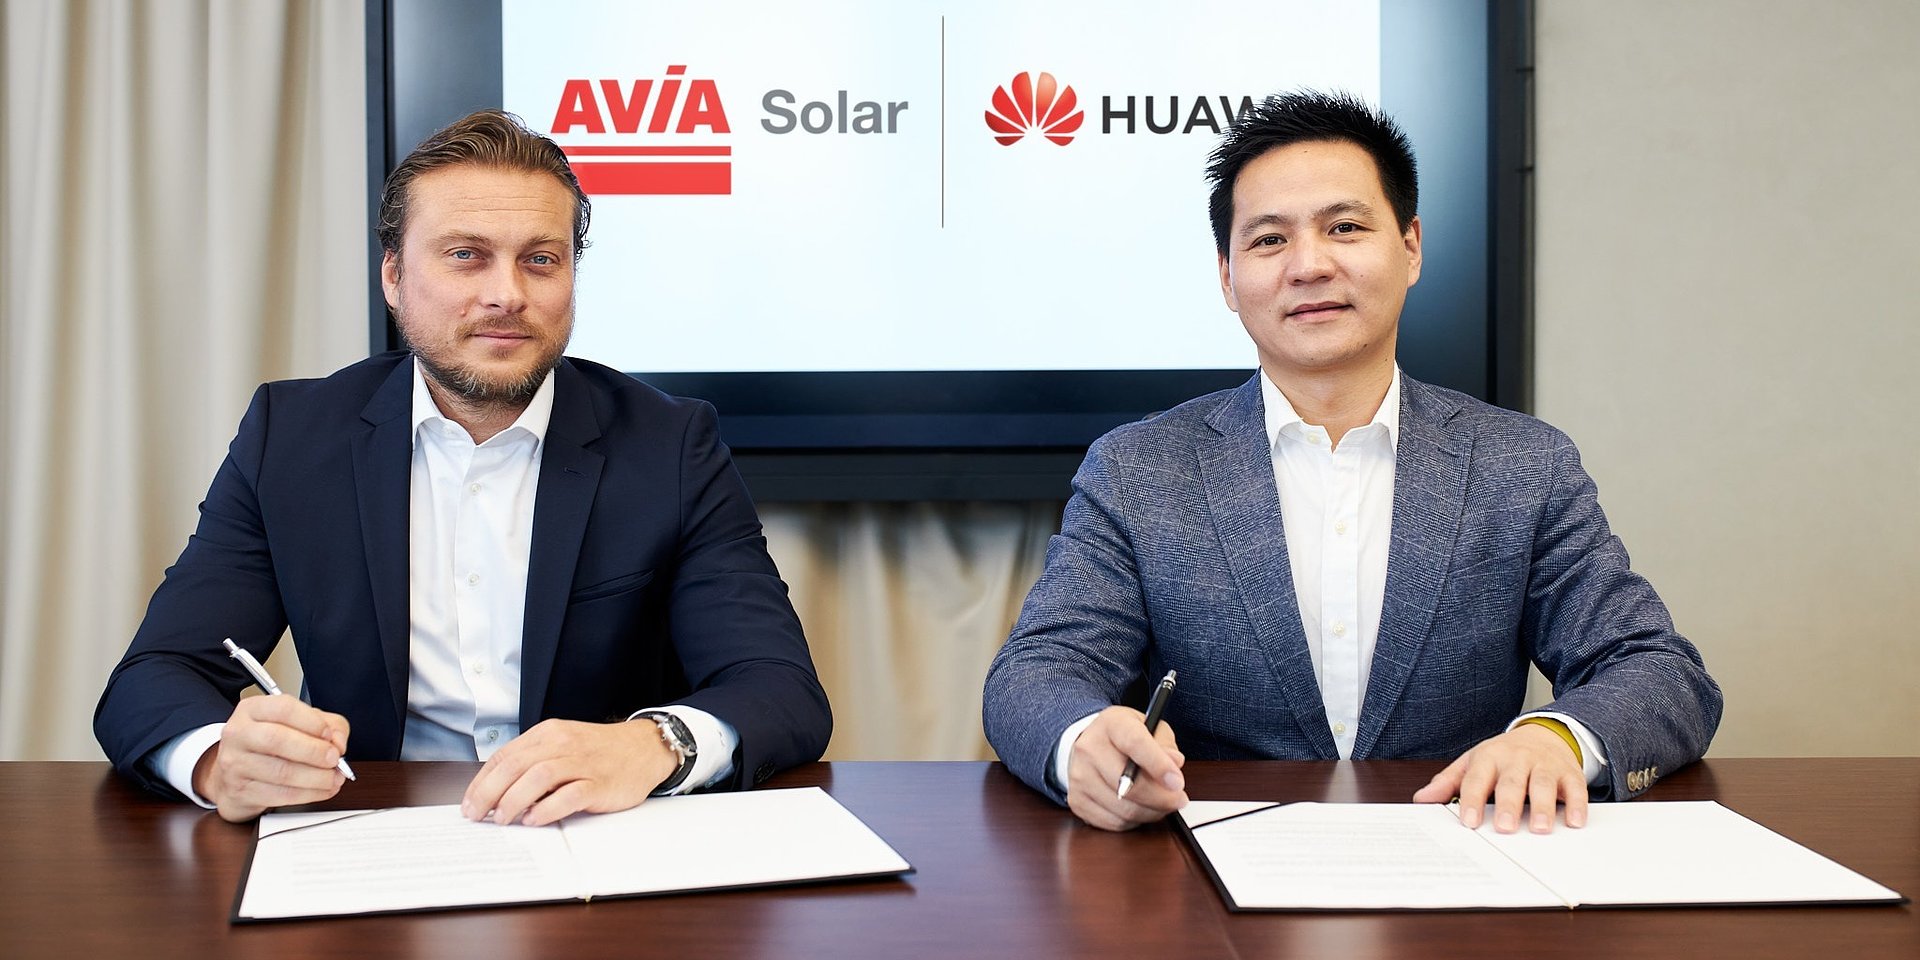 AVIA Solar i Huawei Polska nawiązały współpracę w zakresie rozwoju projektów fotowoltaicznych